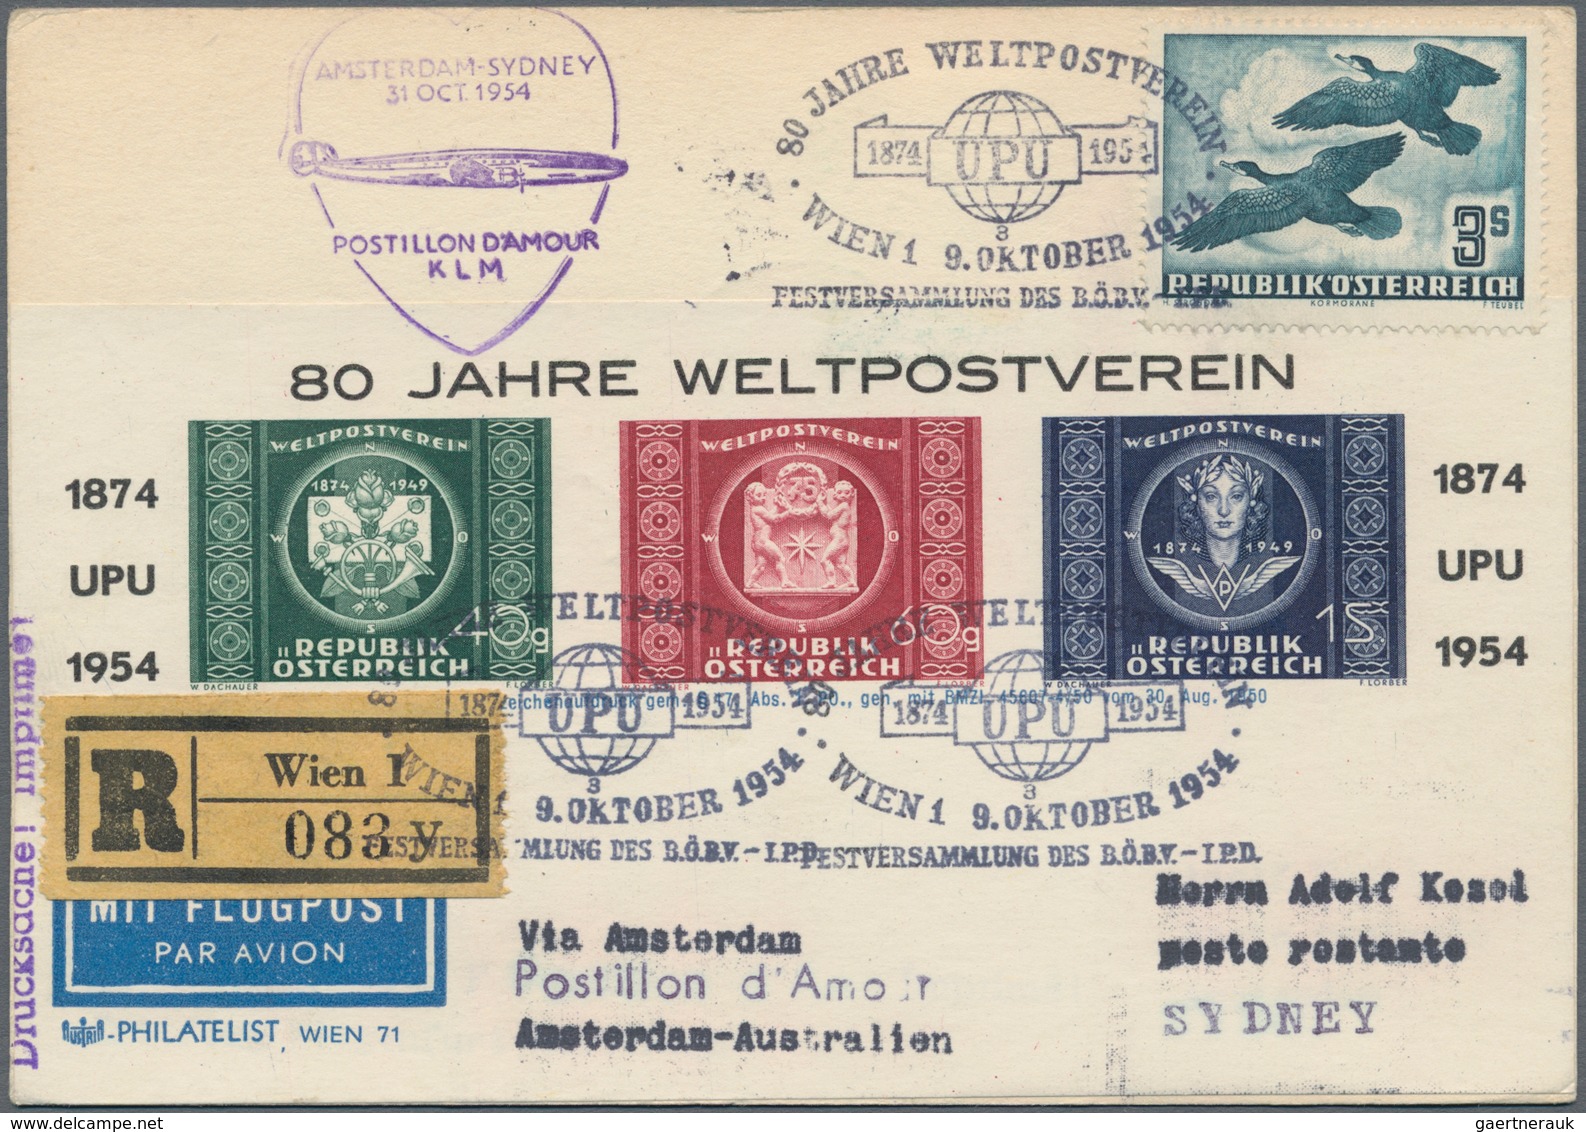 Flugpost Europa: 1950/1958, vielseitige Partie von ca. 93 Flugpost-Briefen und -Karten mit nur besse